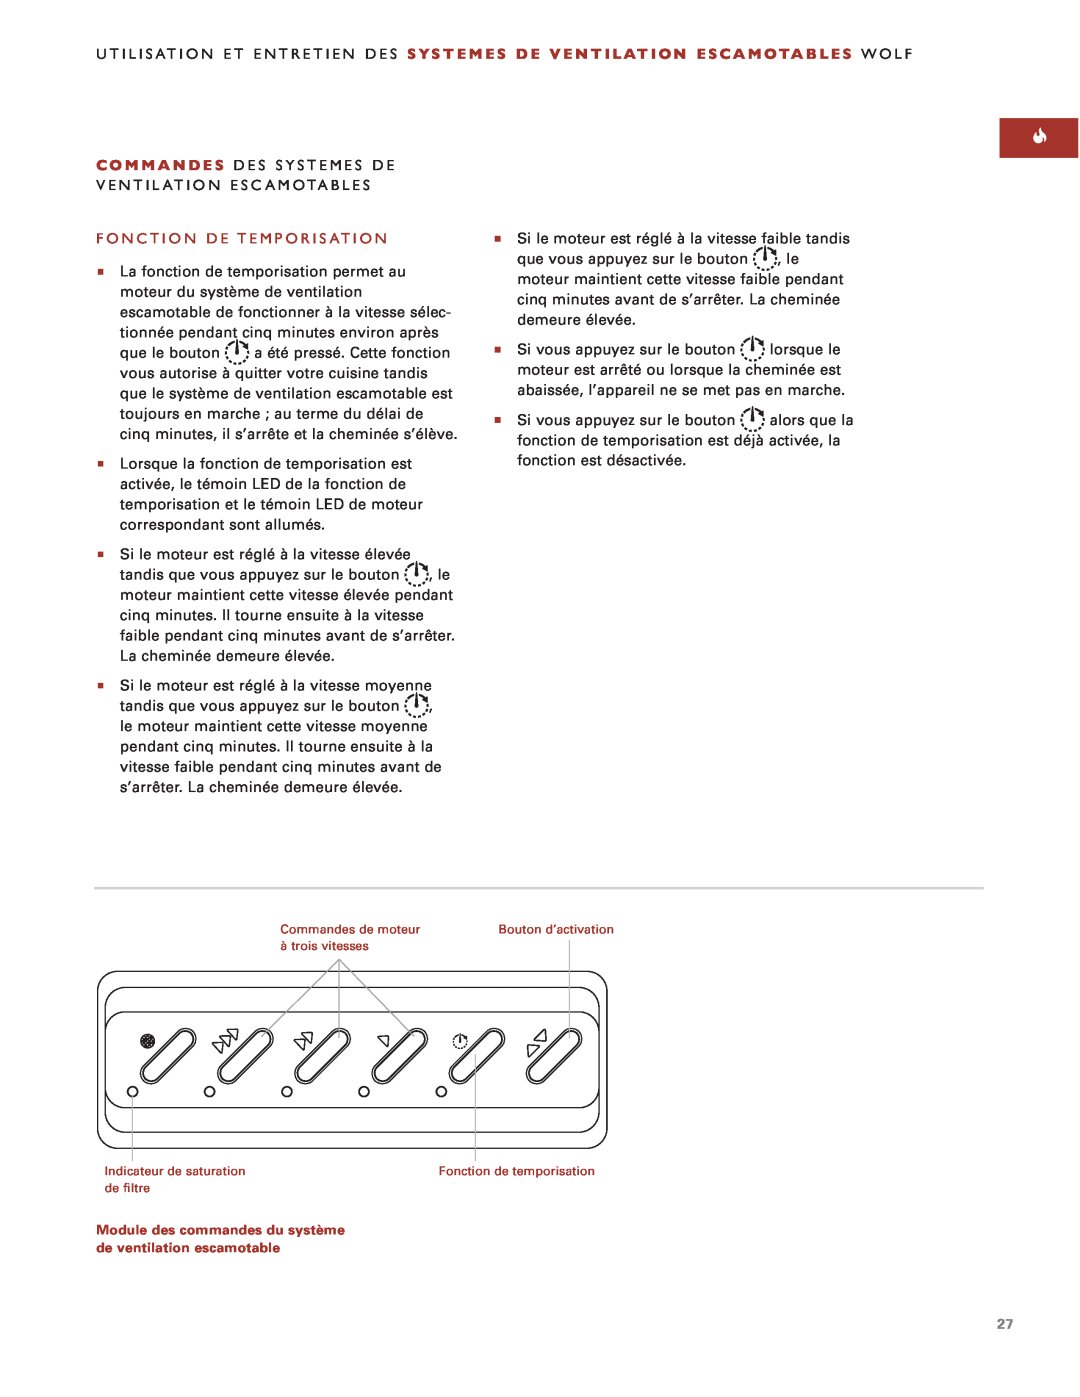 Sub-Zero Downdraft Ventilation manual Fonction De Temporisation, Module des commandes du système de ventilation escamotable 